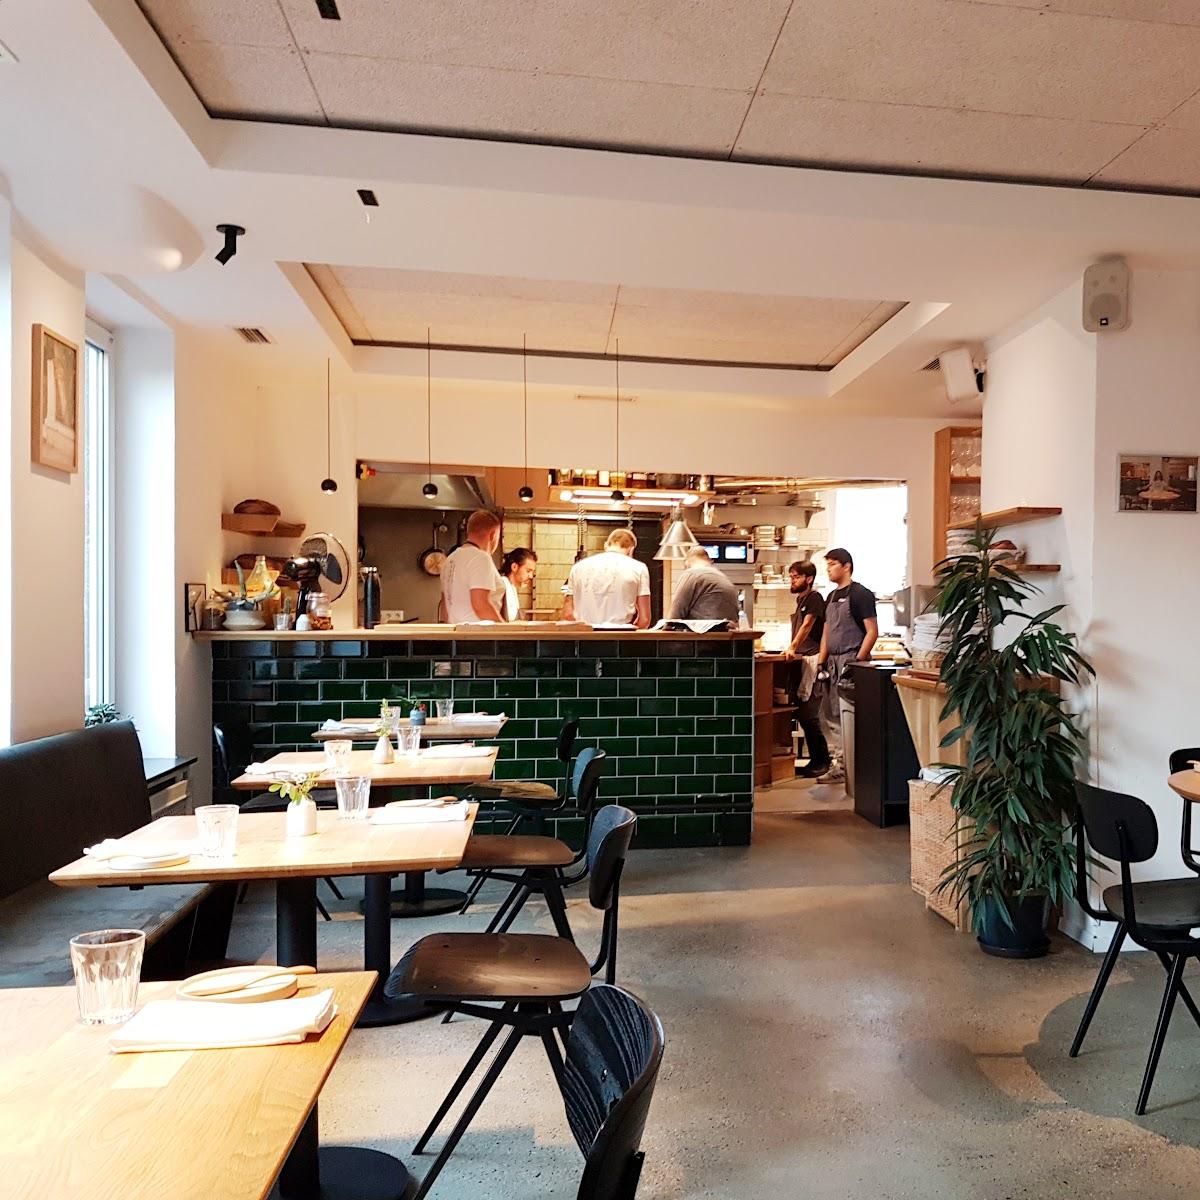 Restaurant "Mondi" in Kassel